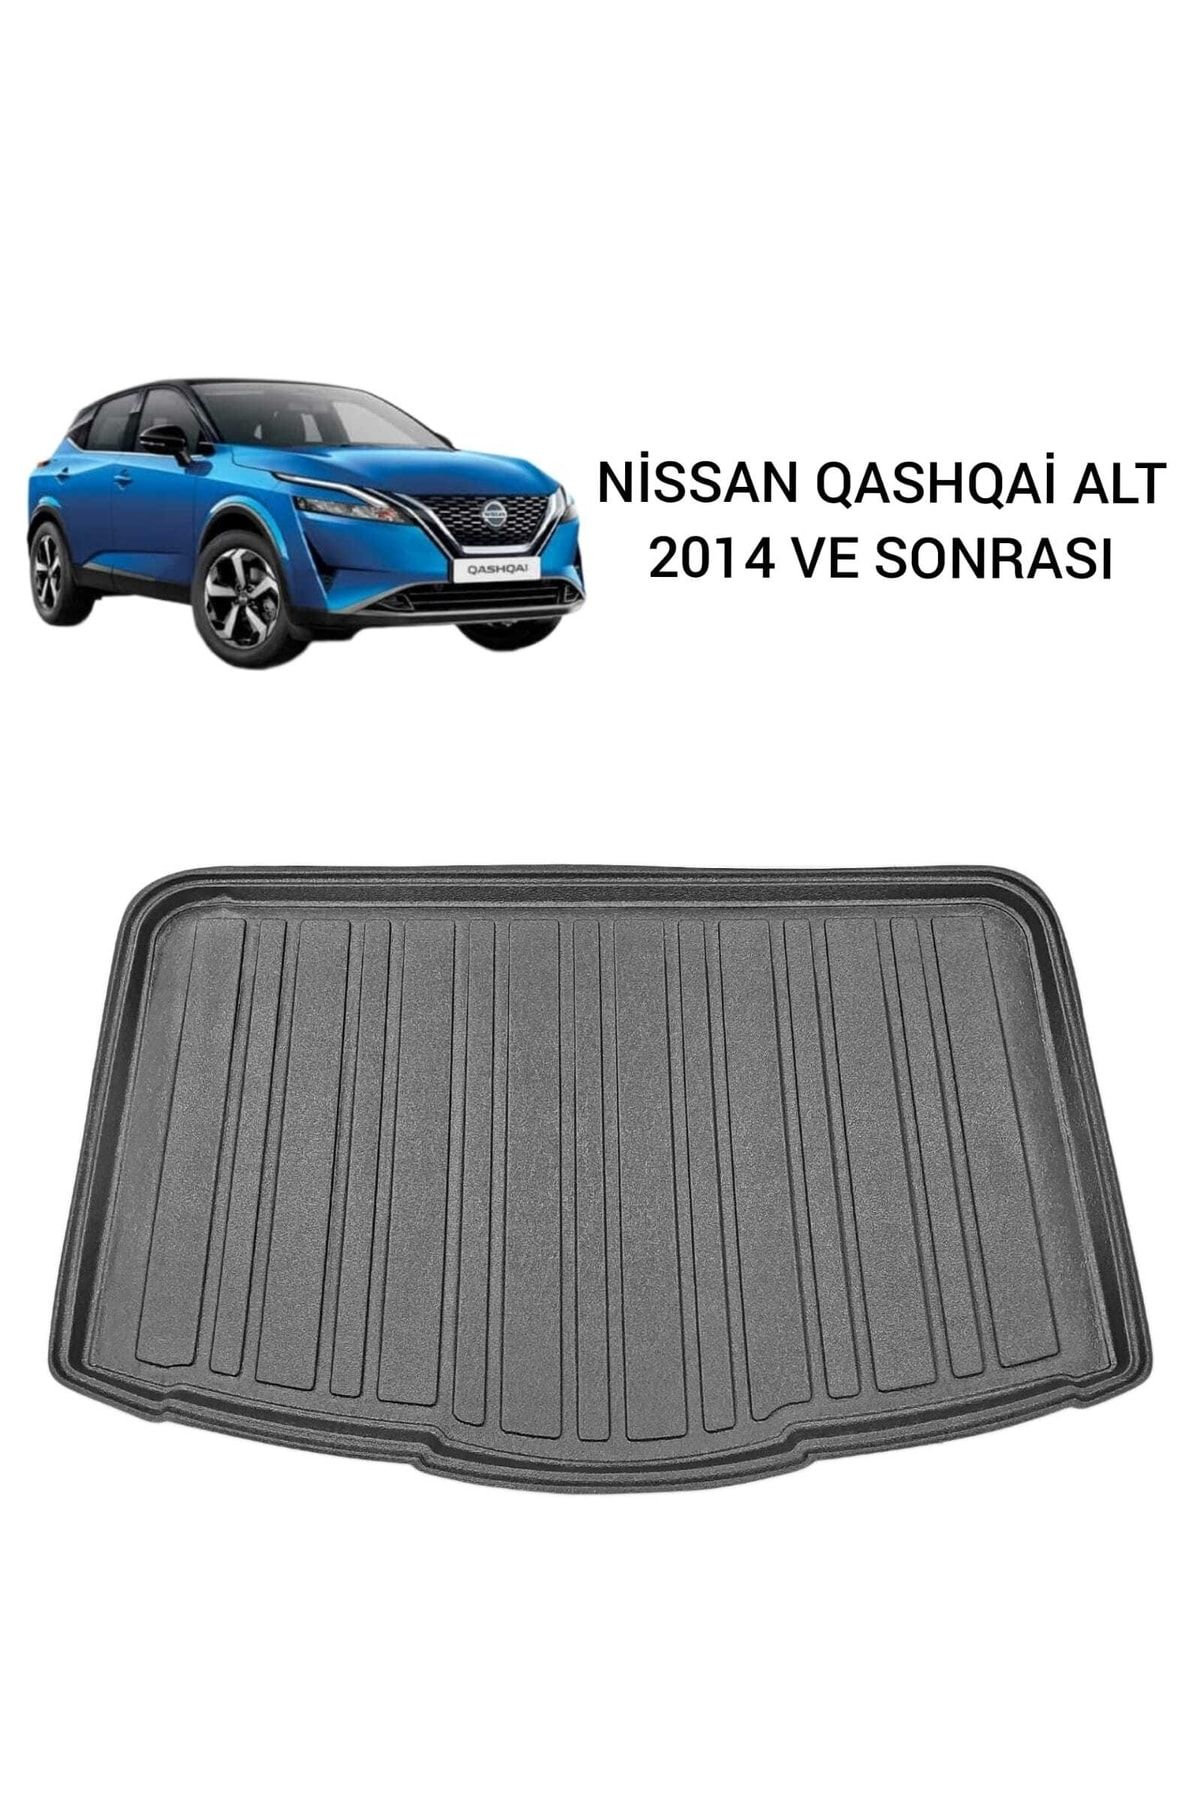 Genel Markalar Nissan Qashqai Alt 2014+ Uyumlu  Bagaj Havuzu Protection